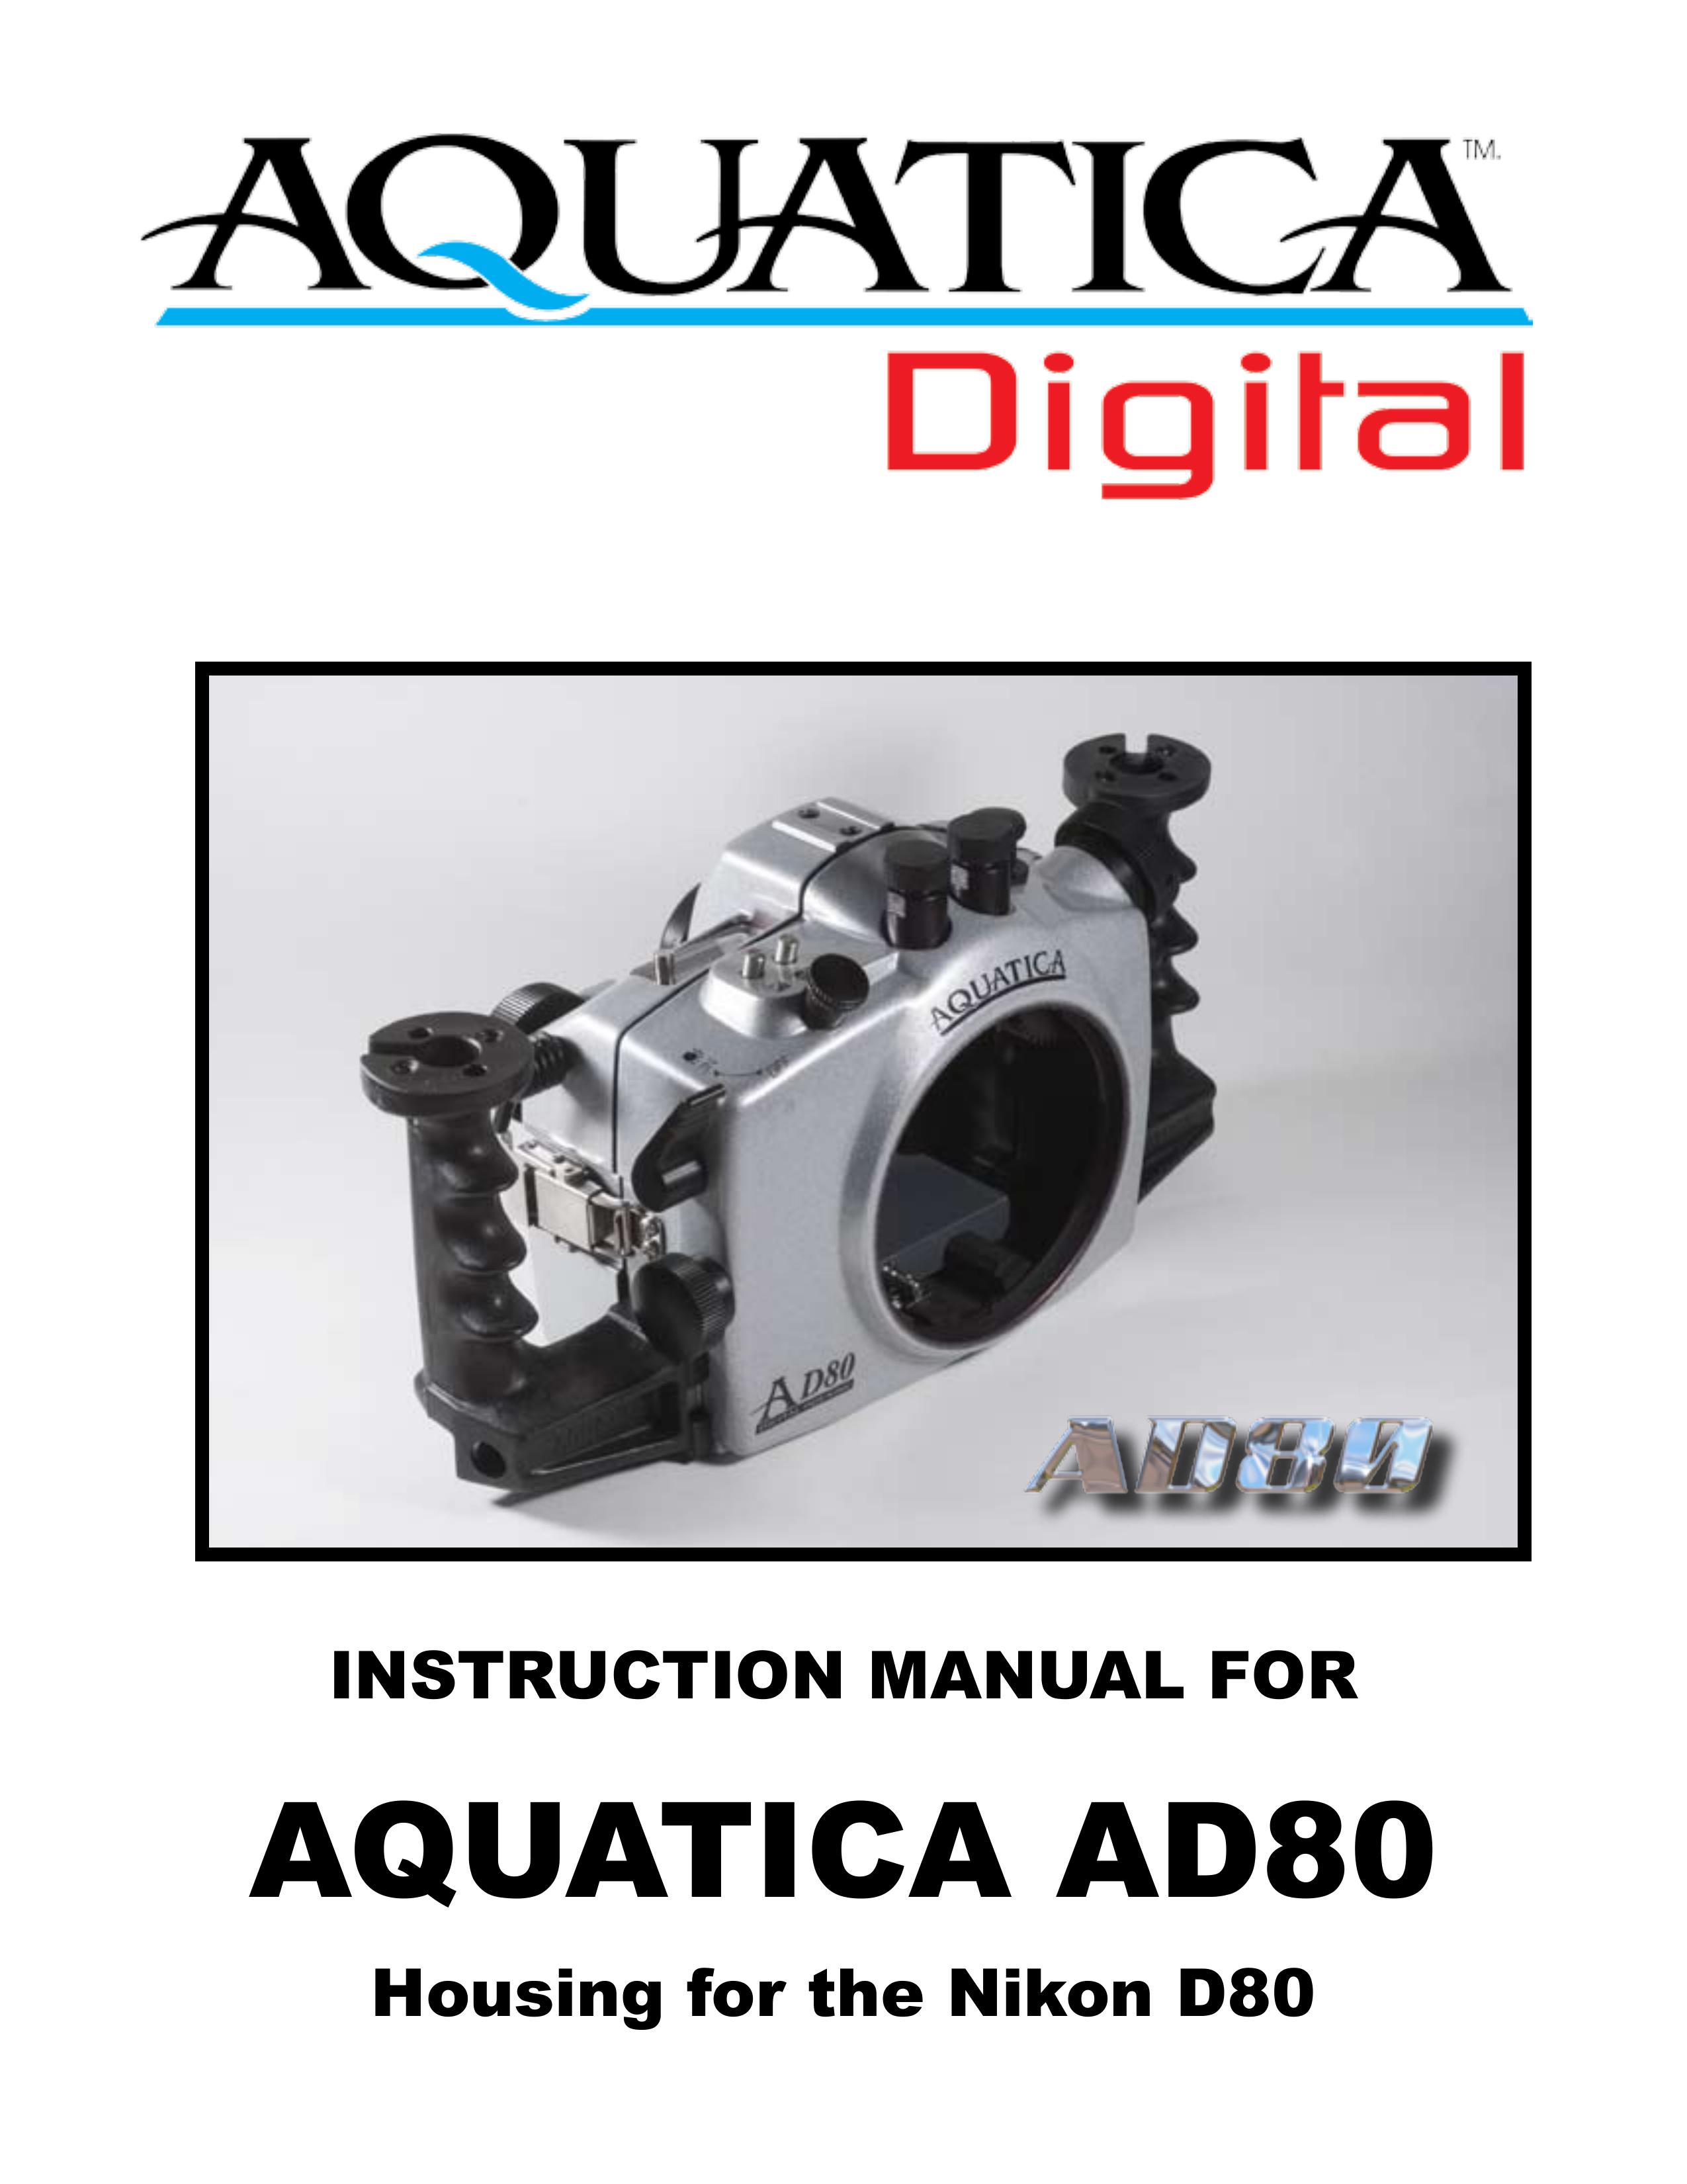 Aquatica AD80 Digital Camera User Manual